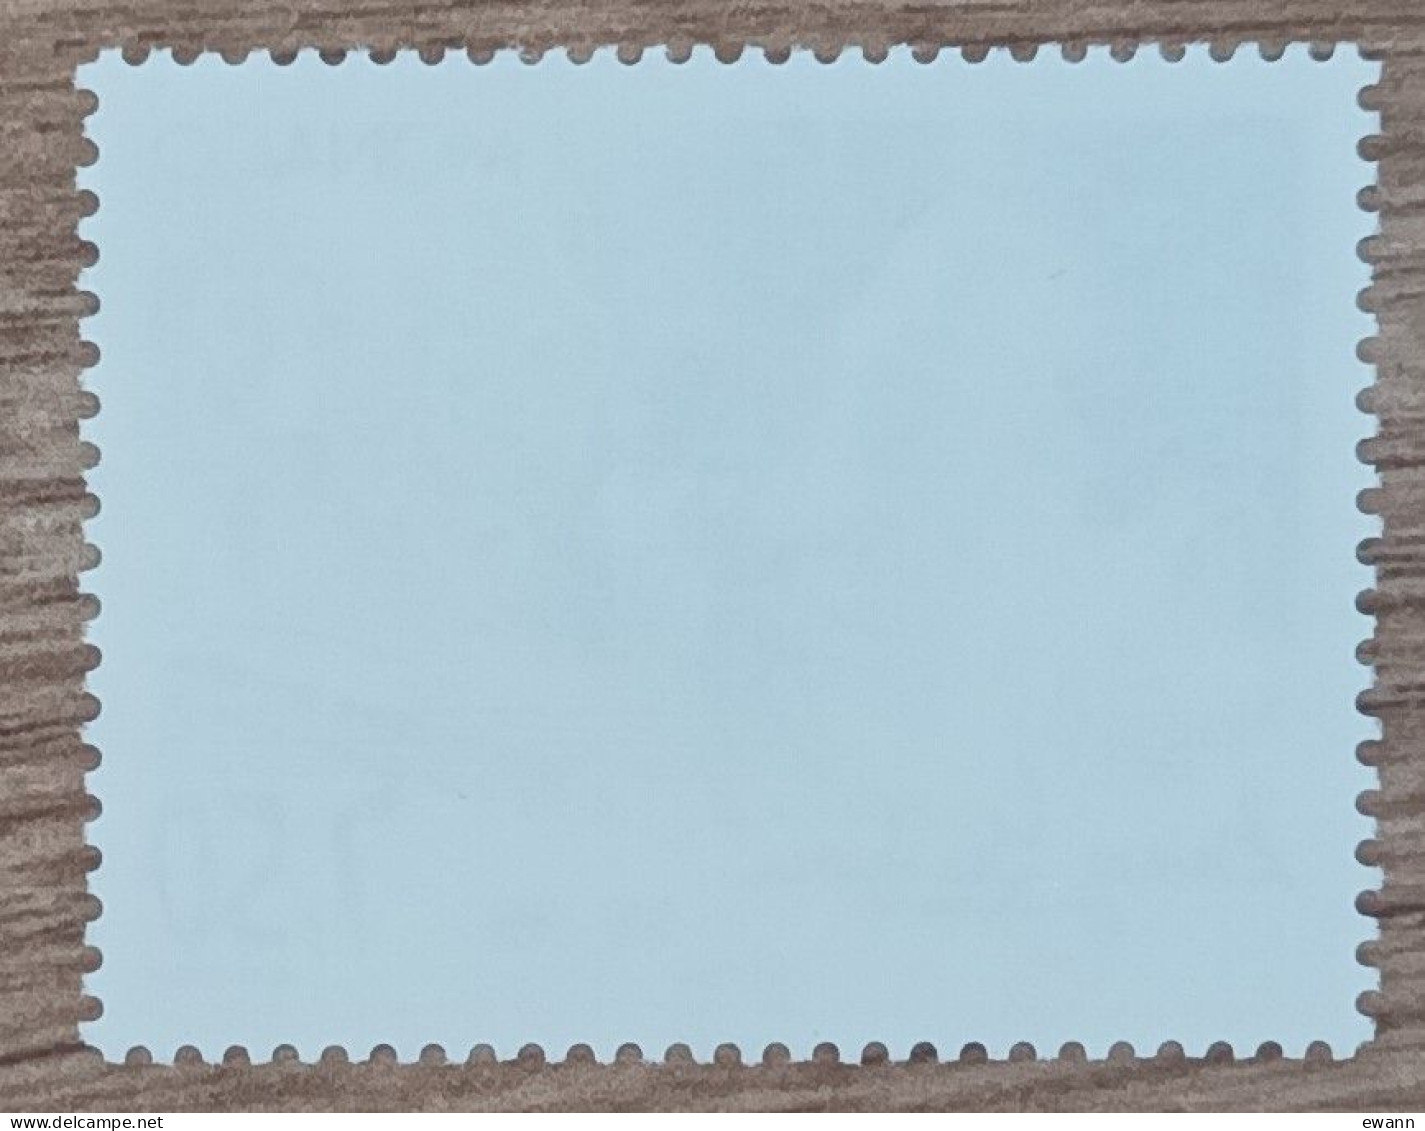 Monaco - YT N°2169 - George Gershwin, Compositeur - 1998 - Neuf - Unused Stamps